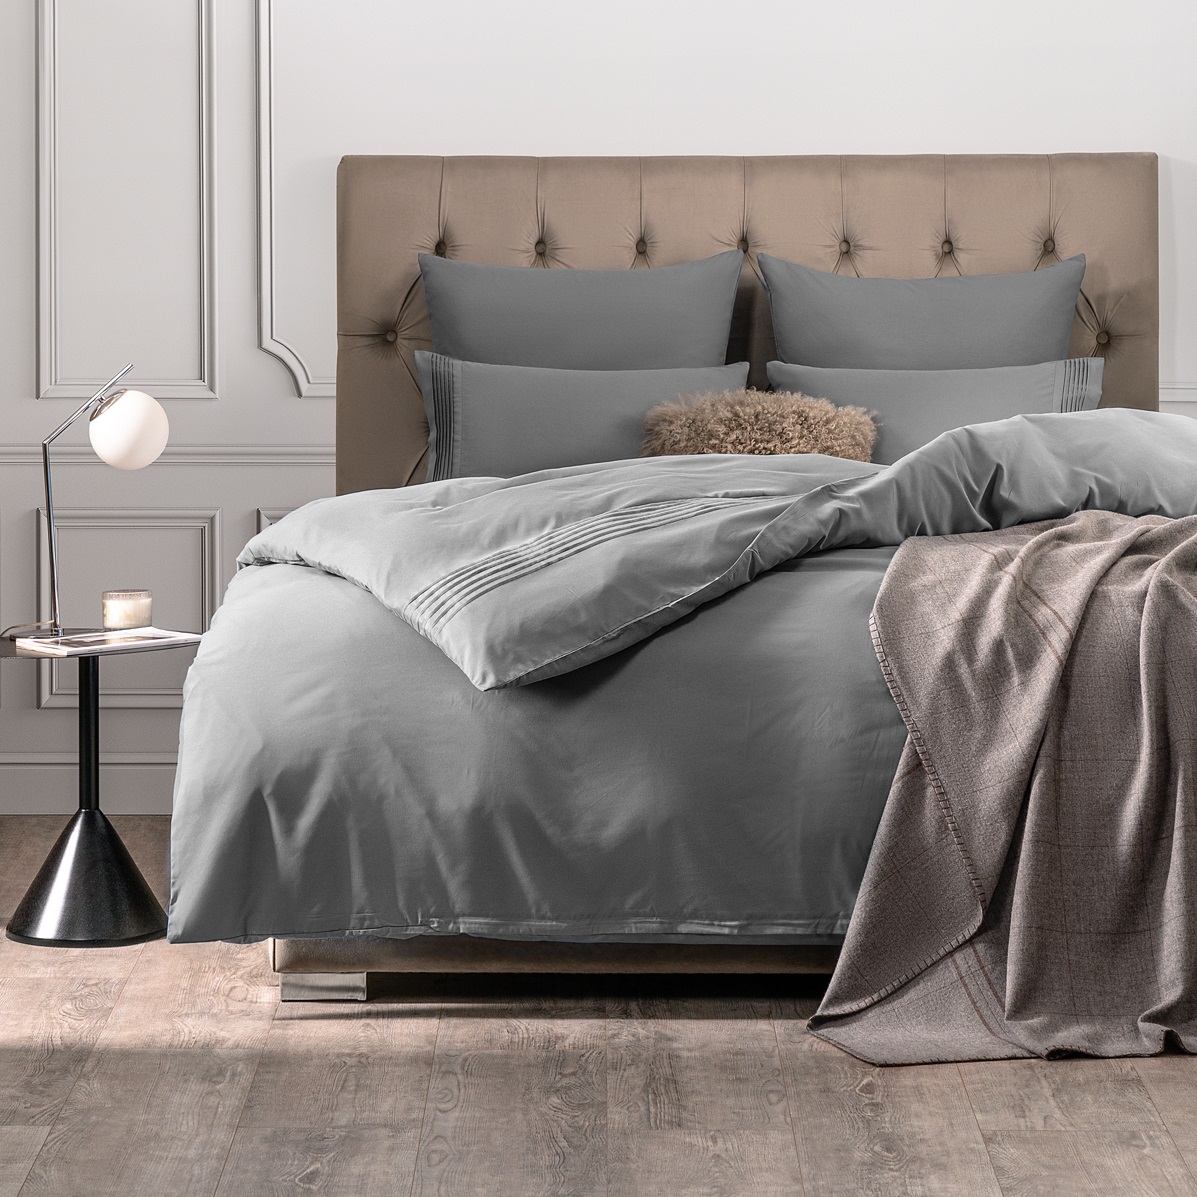 Комплект постельного белья Sleepix Миоко серый Двуспальный, размер Двуспальный - фото 1